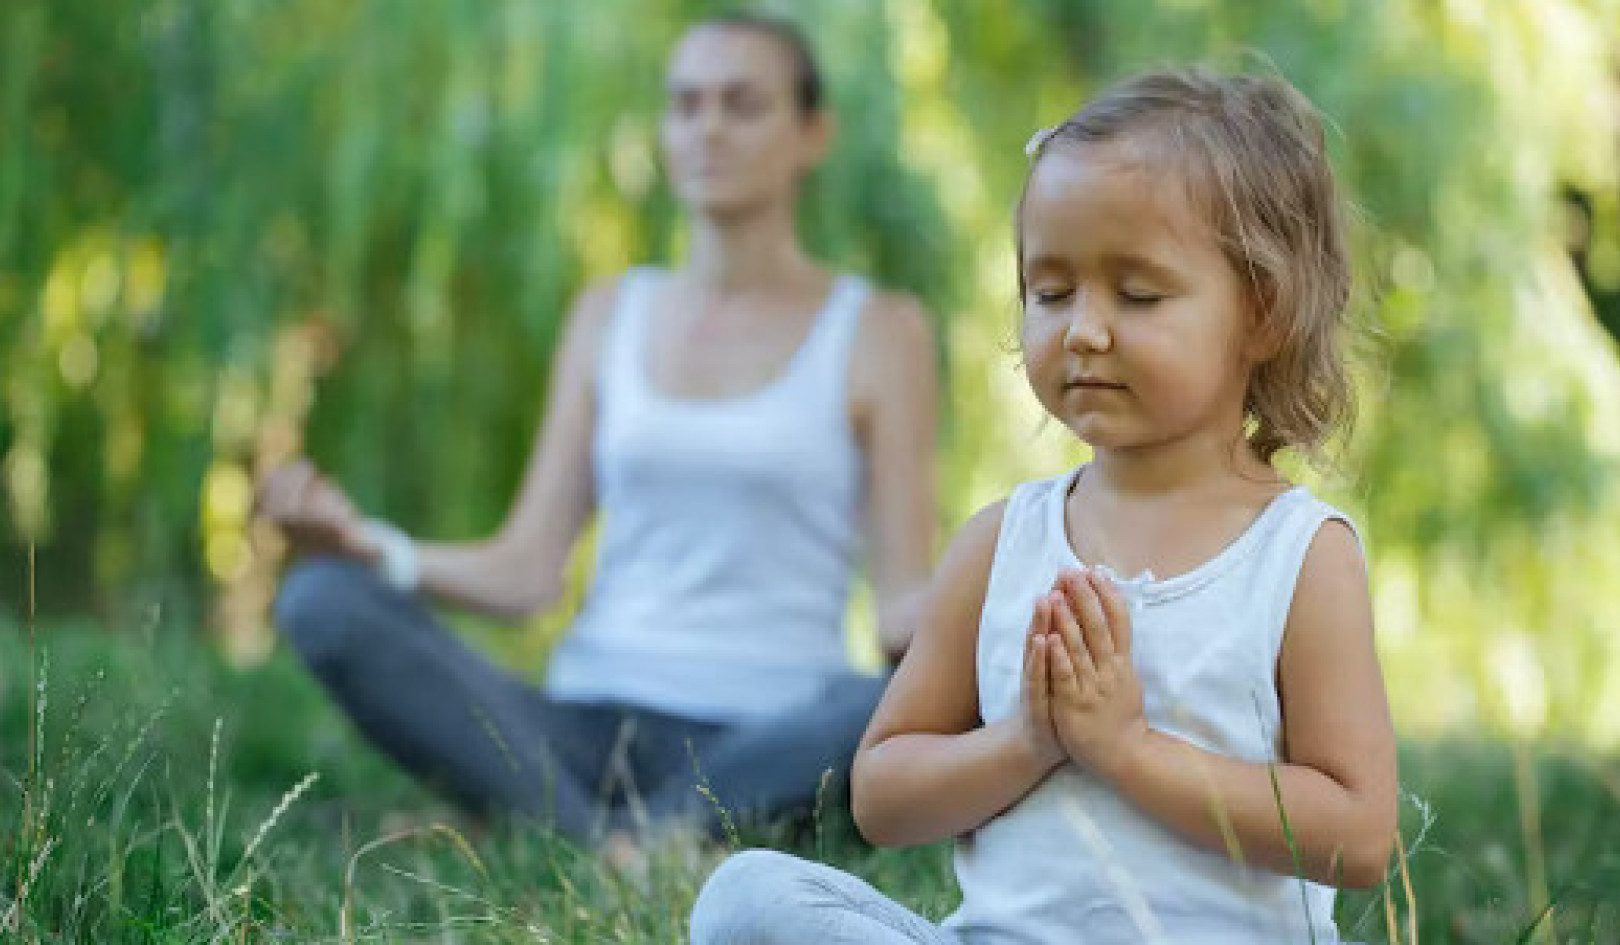 Медитация может лечить детей, страдающих от травм, сложных диагнозов или стресса